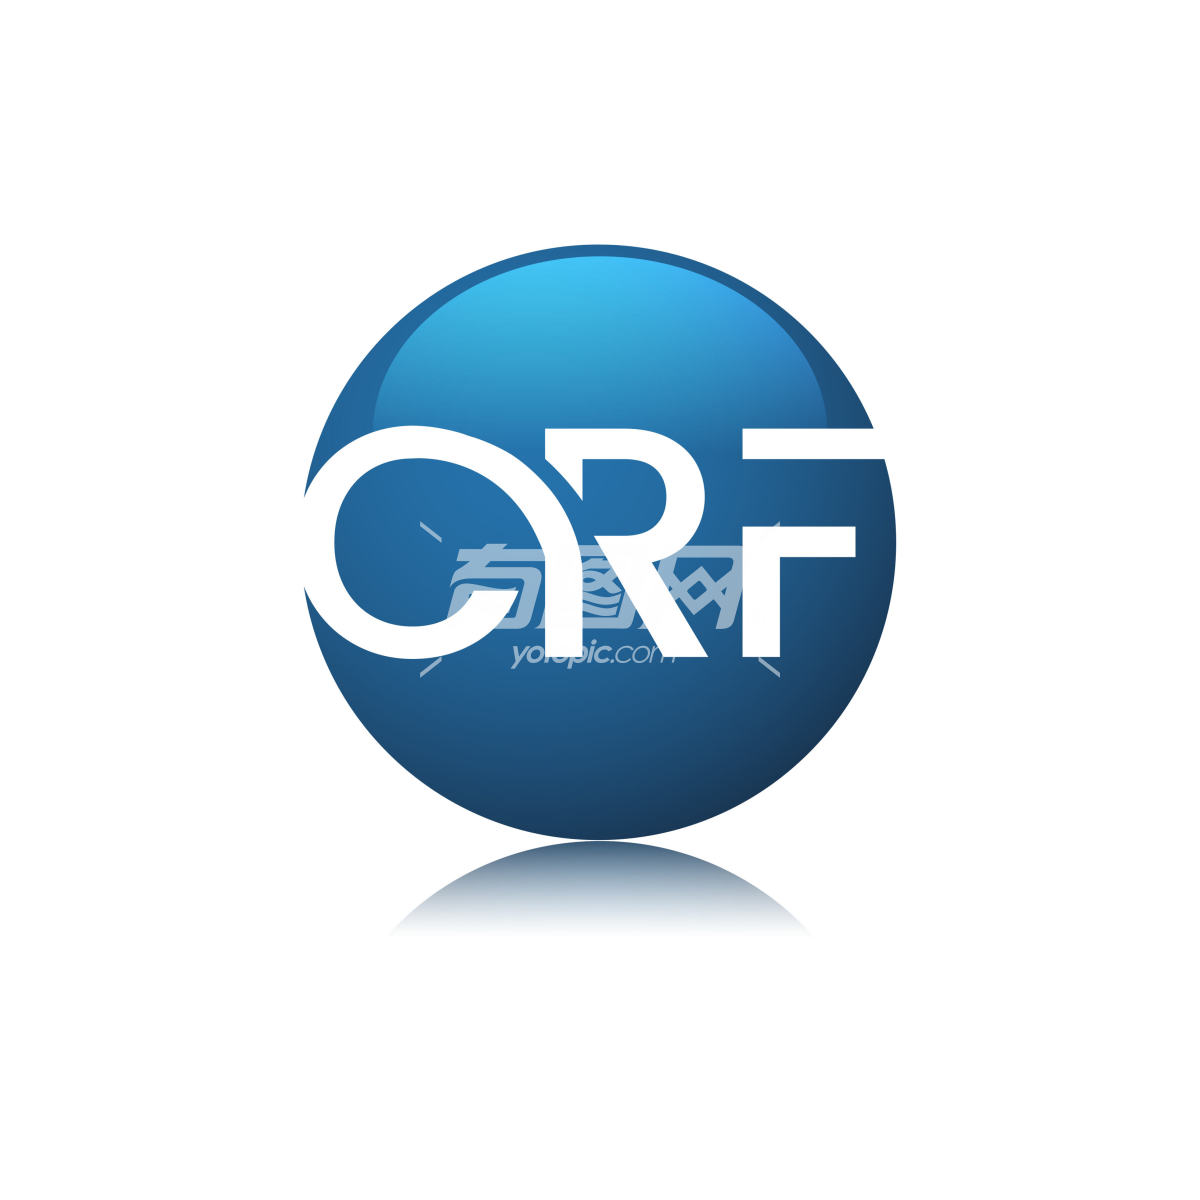 CRF字母标志设计